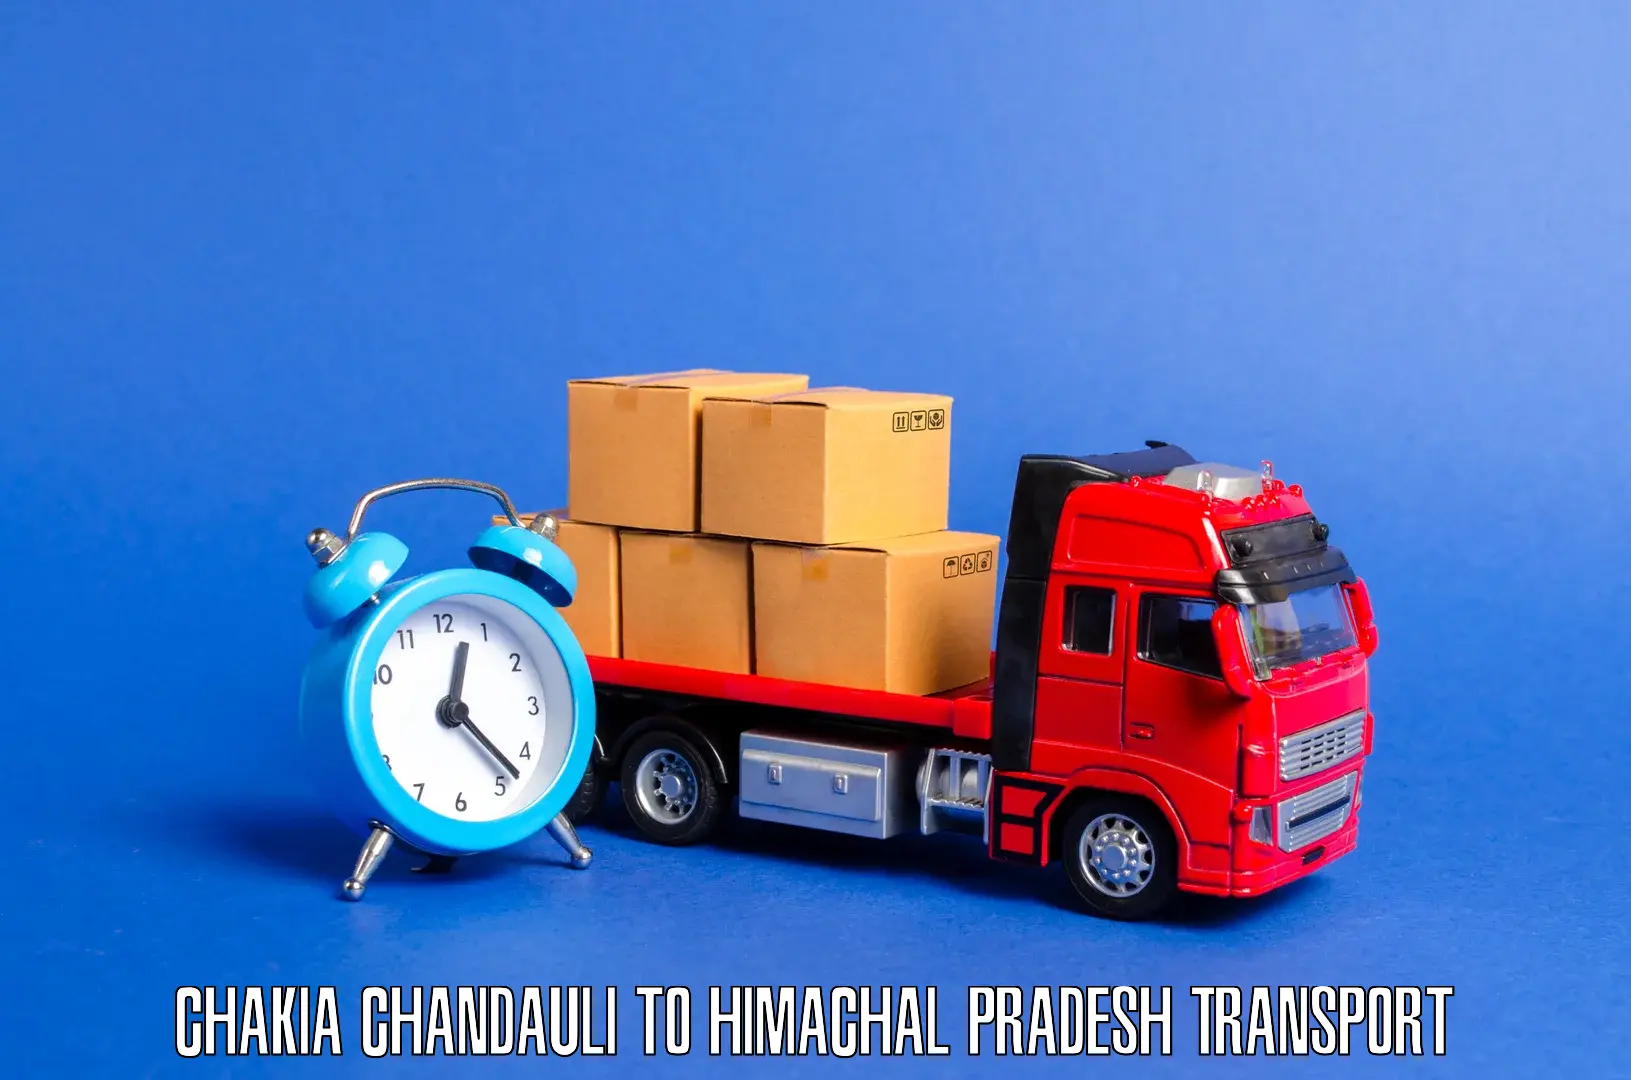 Land transport services Chakia Chandauli to Jawali